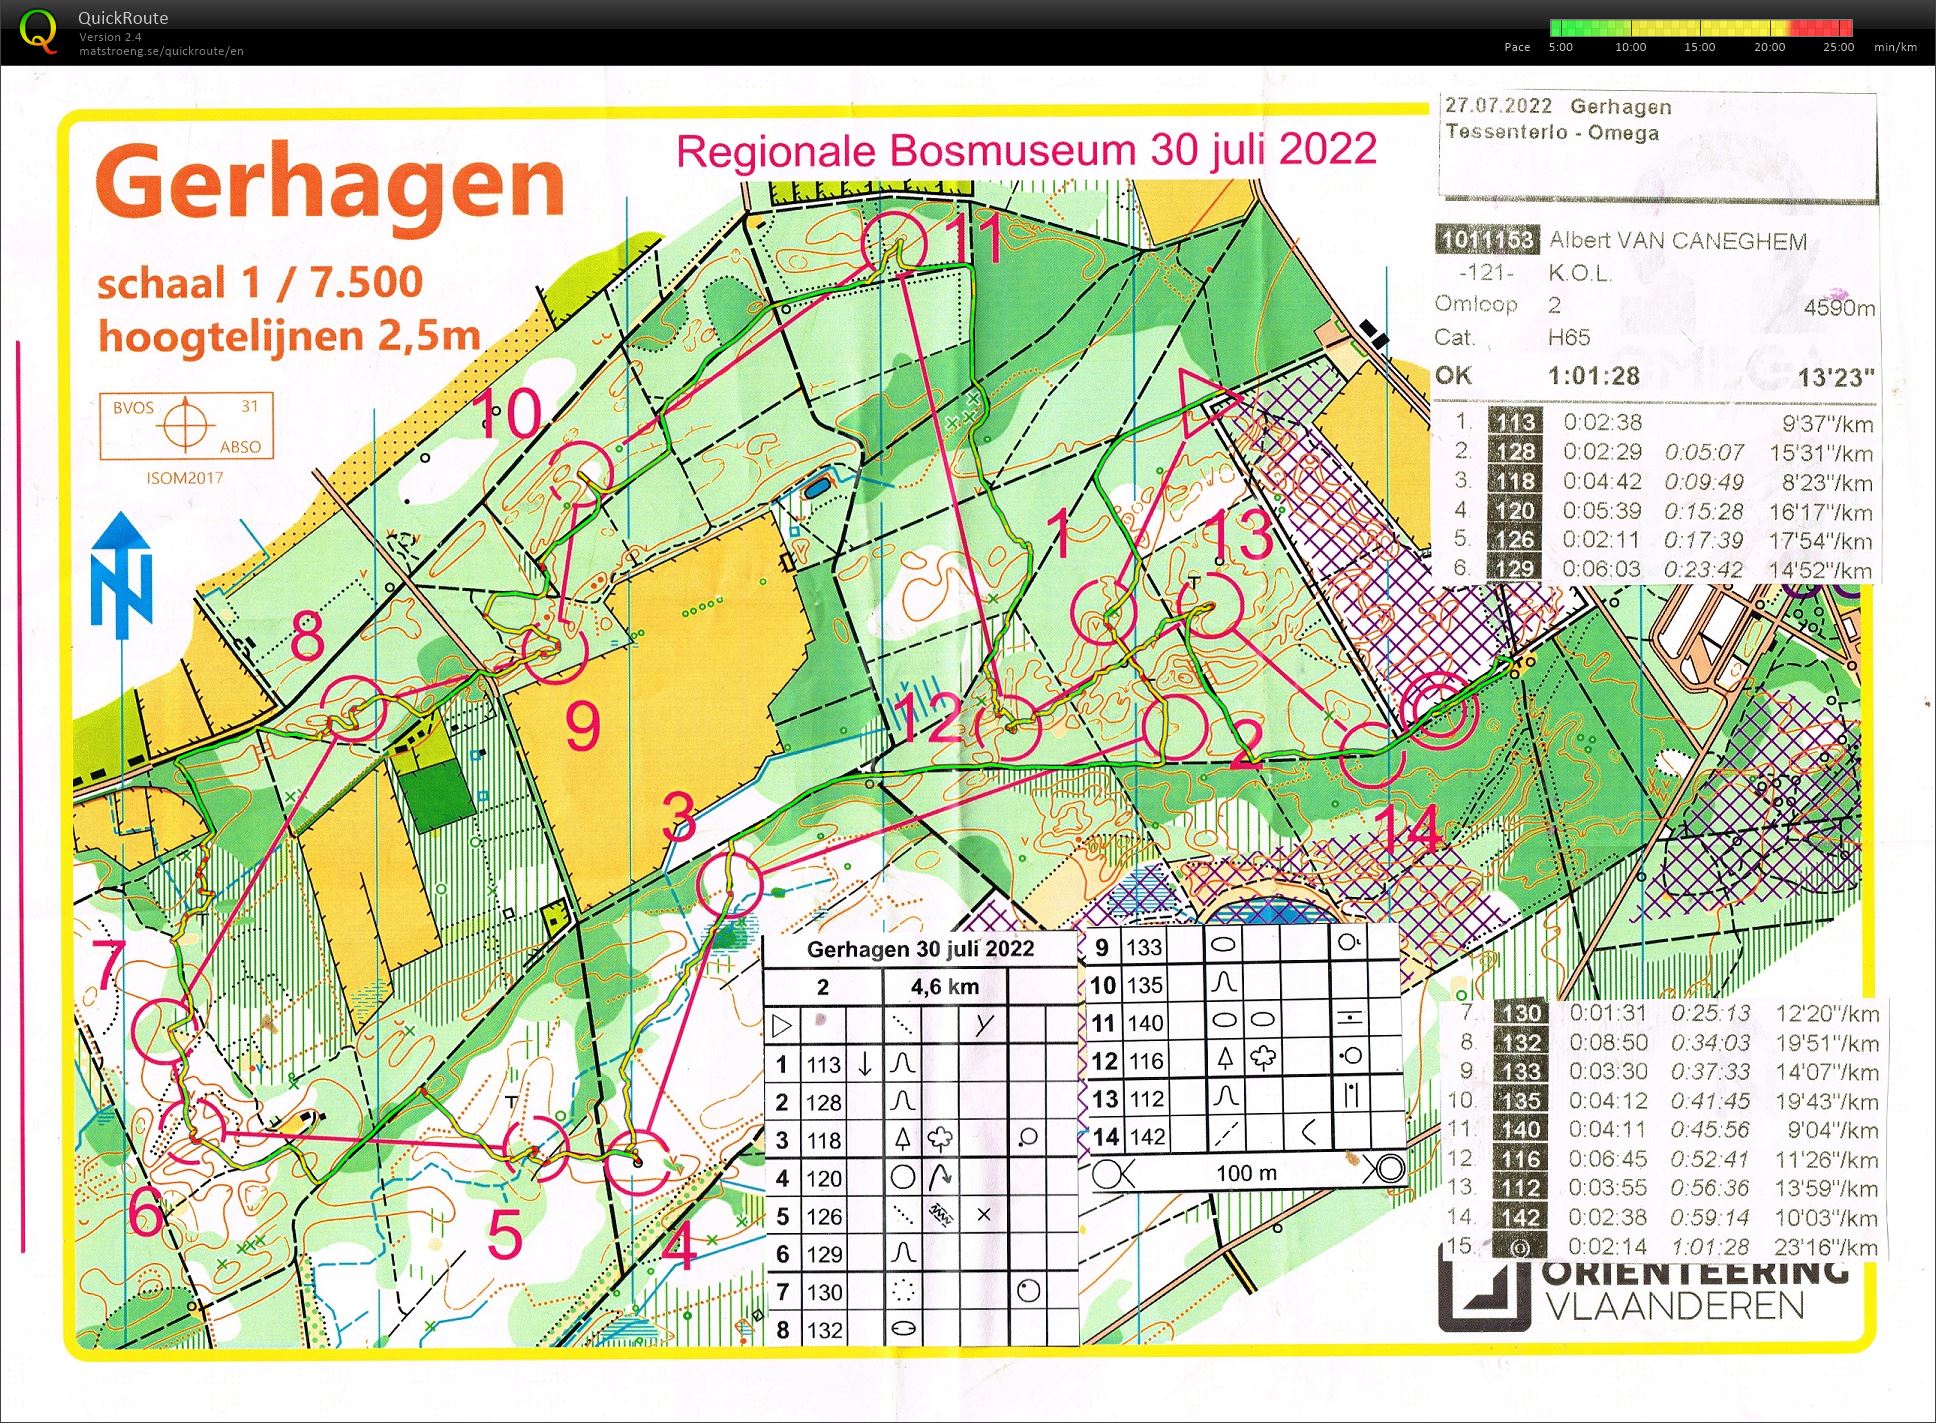 Gerhagen (27-07-2022)